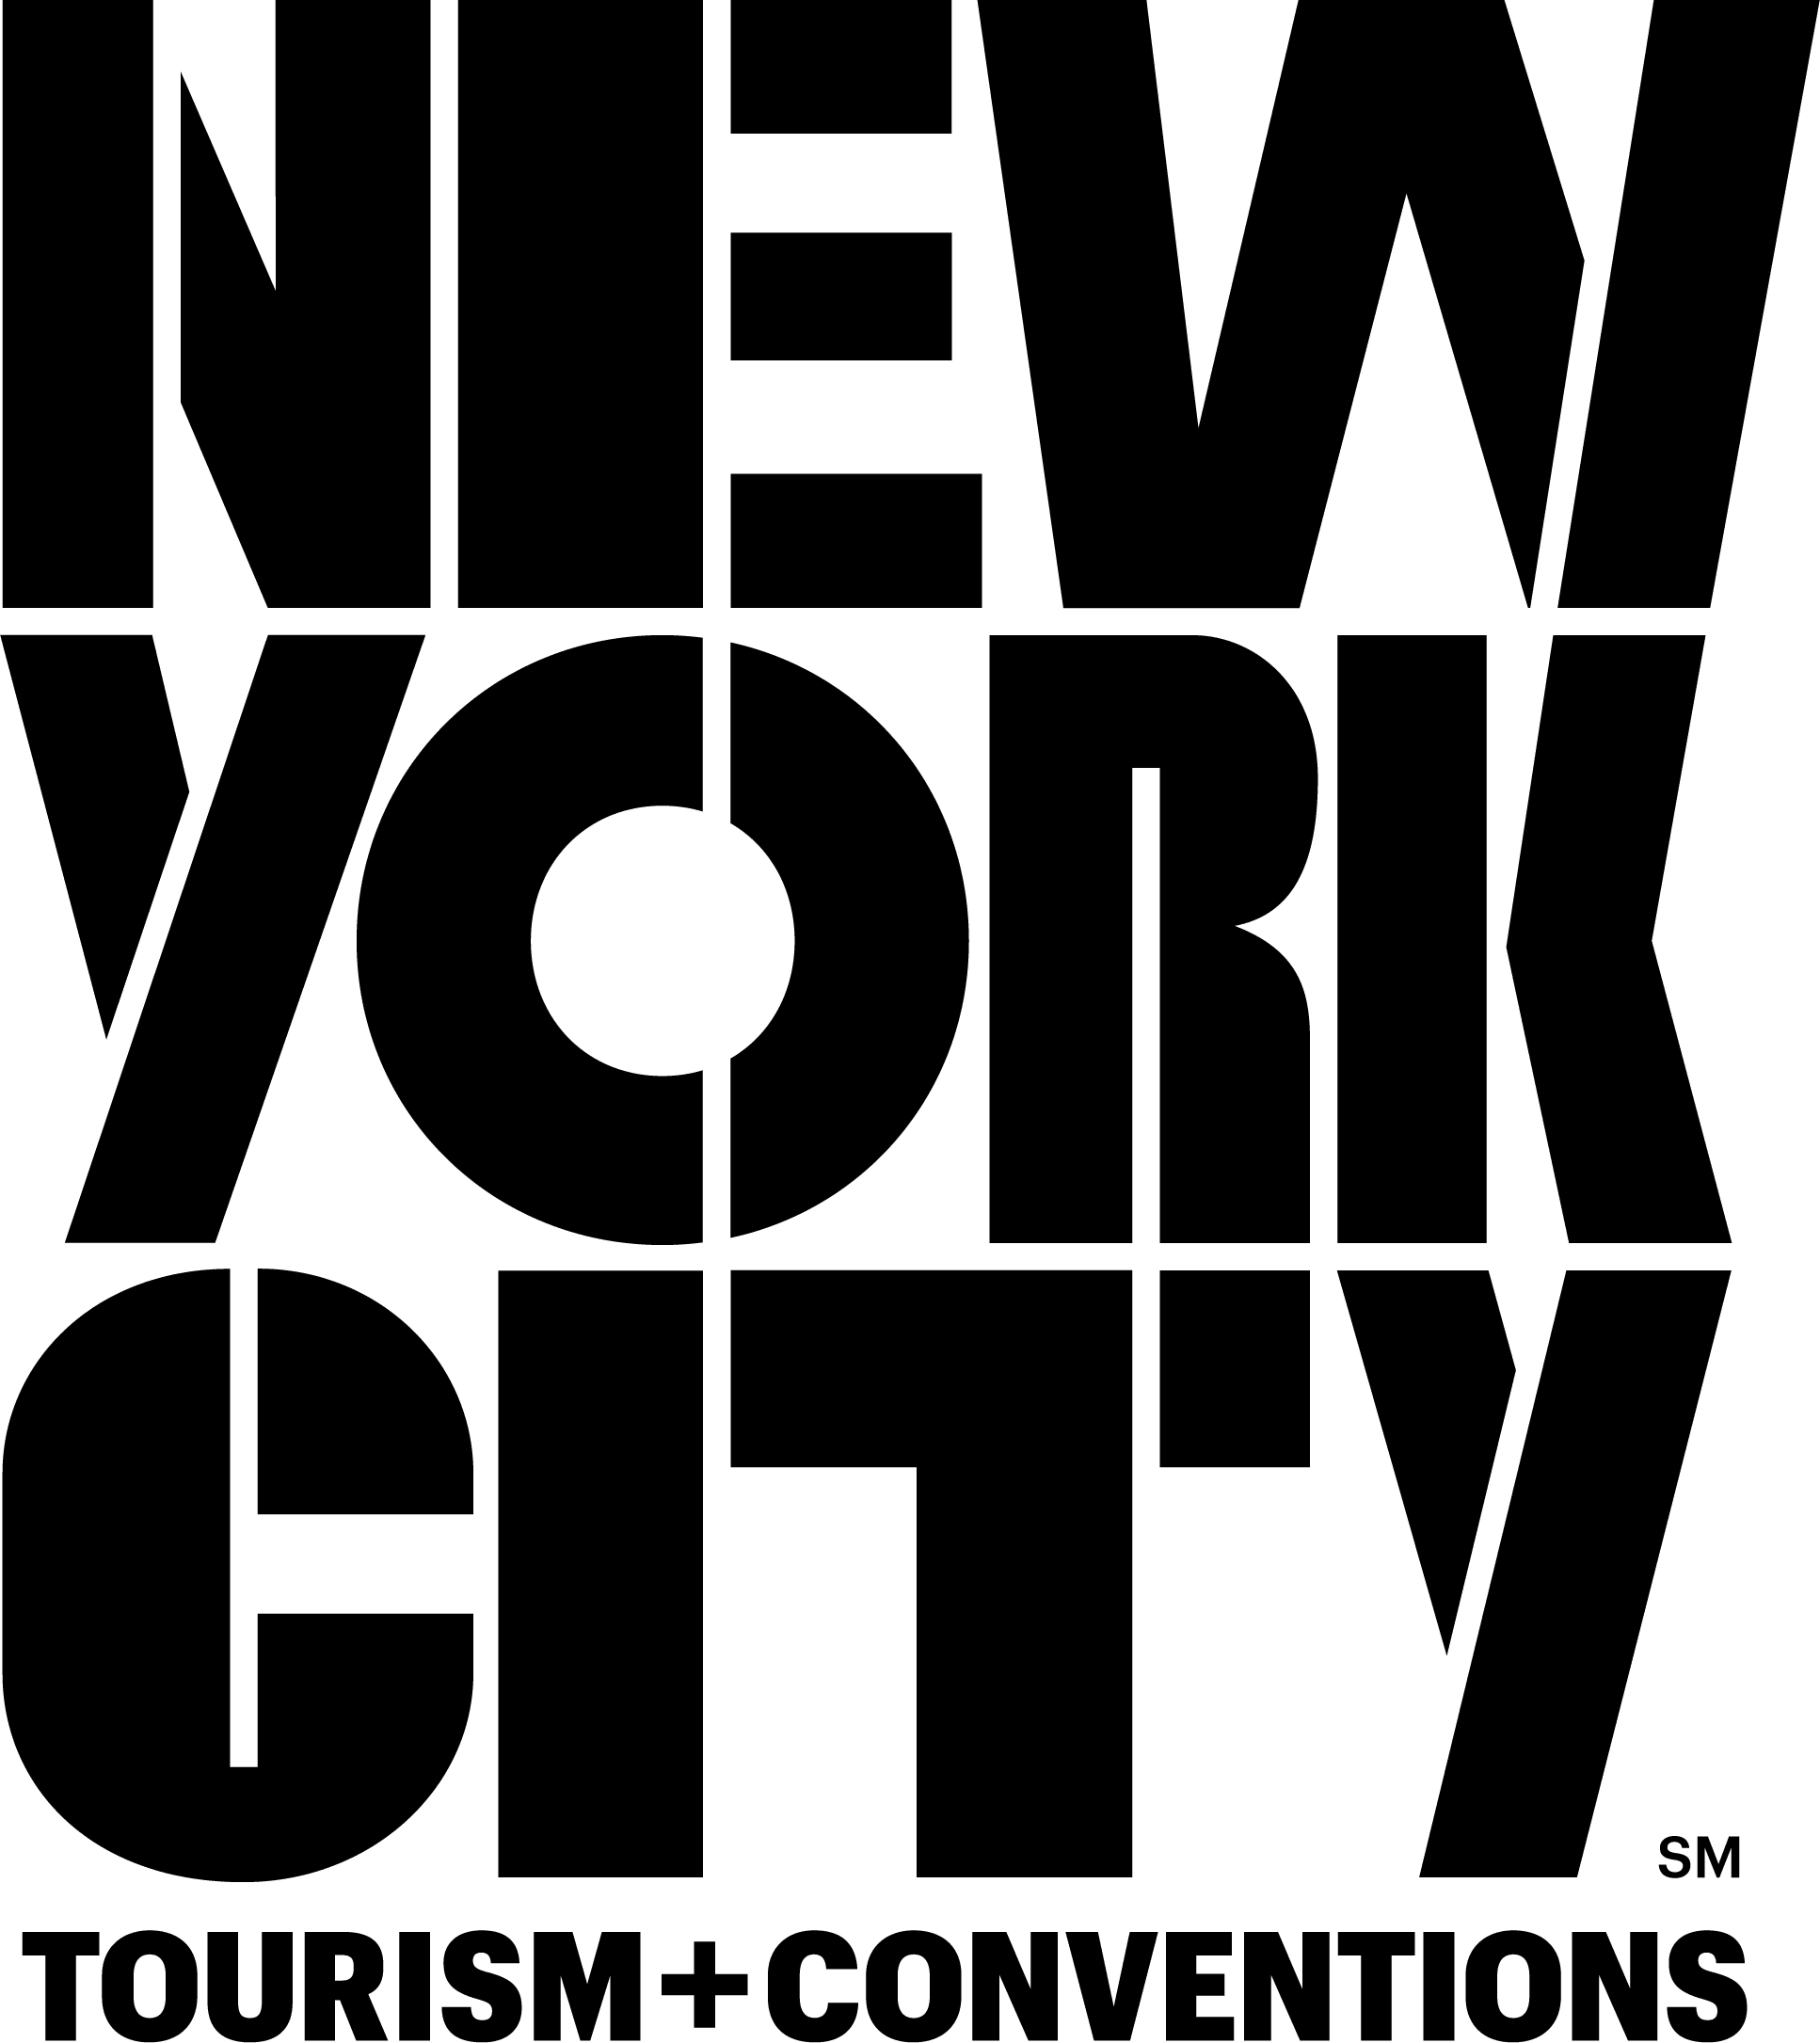 NYCtourism B2B Lockup